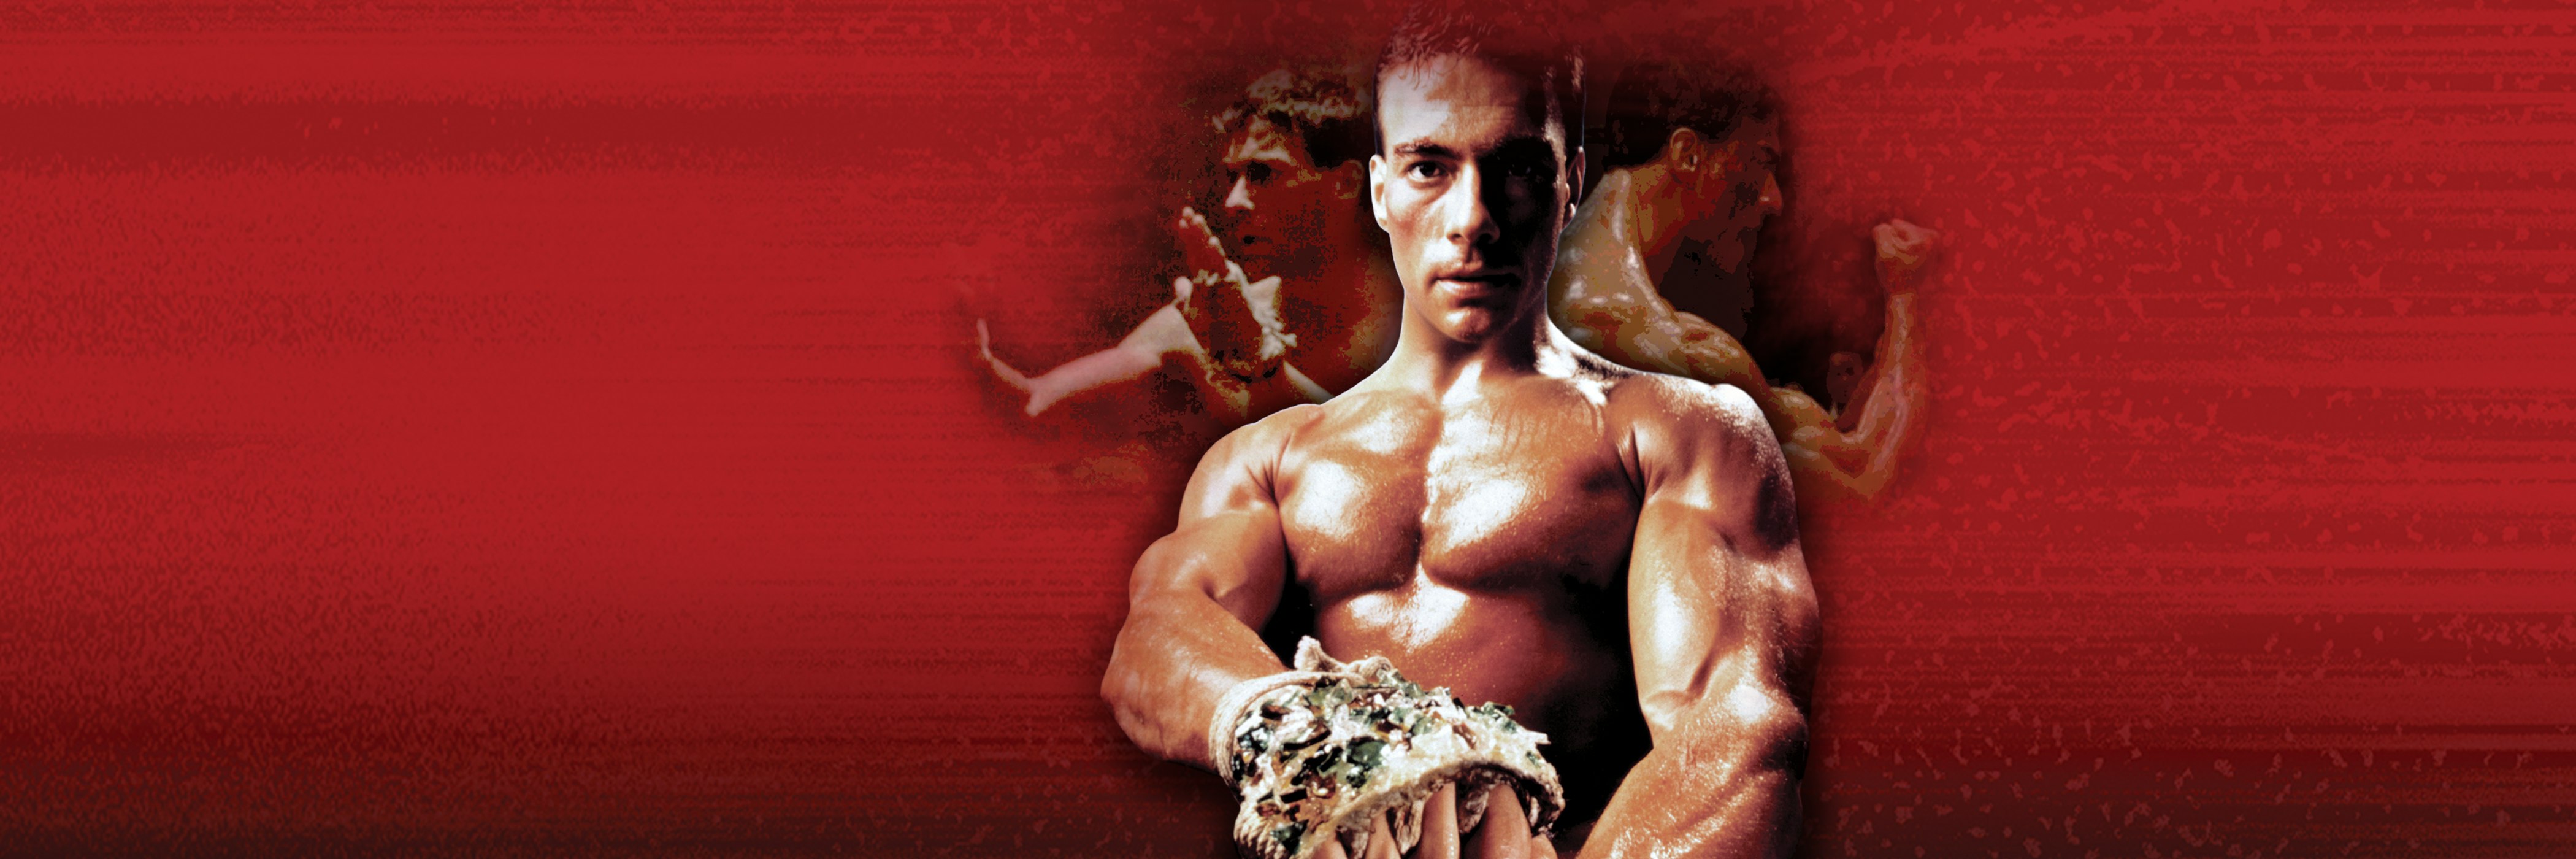 Kickboxer Retaliation | Official Movie Site | Watch Online